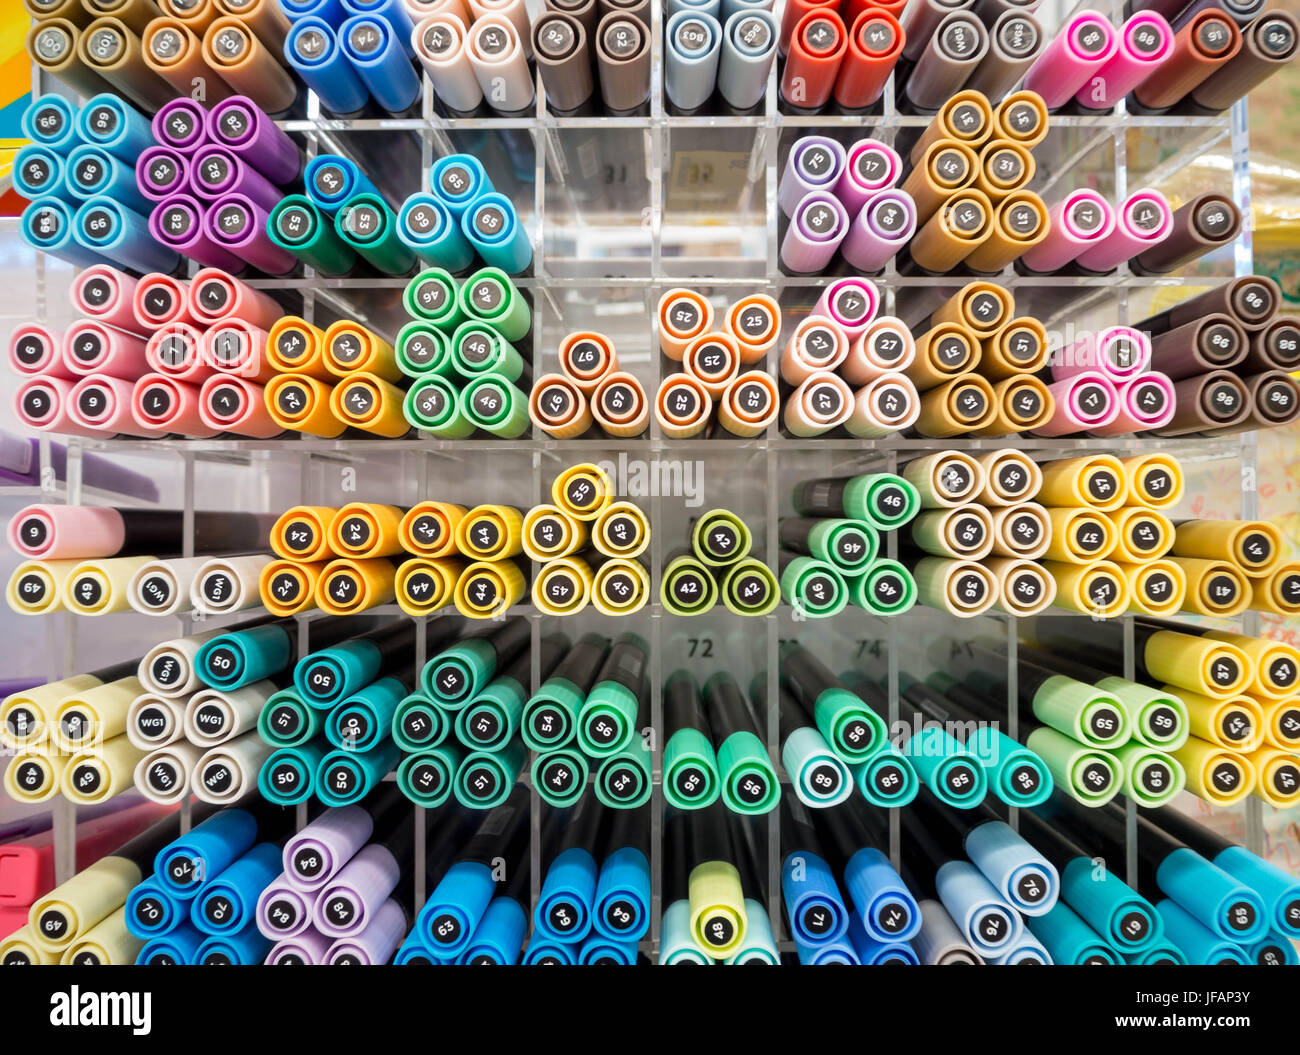 Bunte Stifte im Regal im Schreibwarenladen, selektiven Fokus  Stockfotografie - Alamy